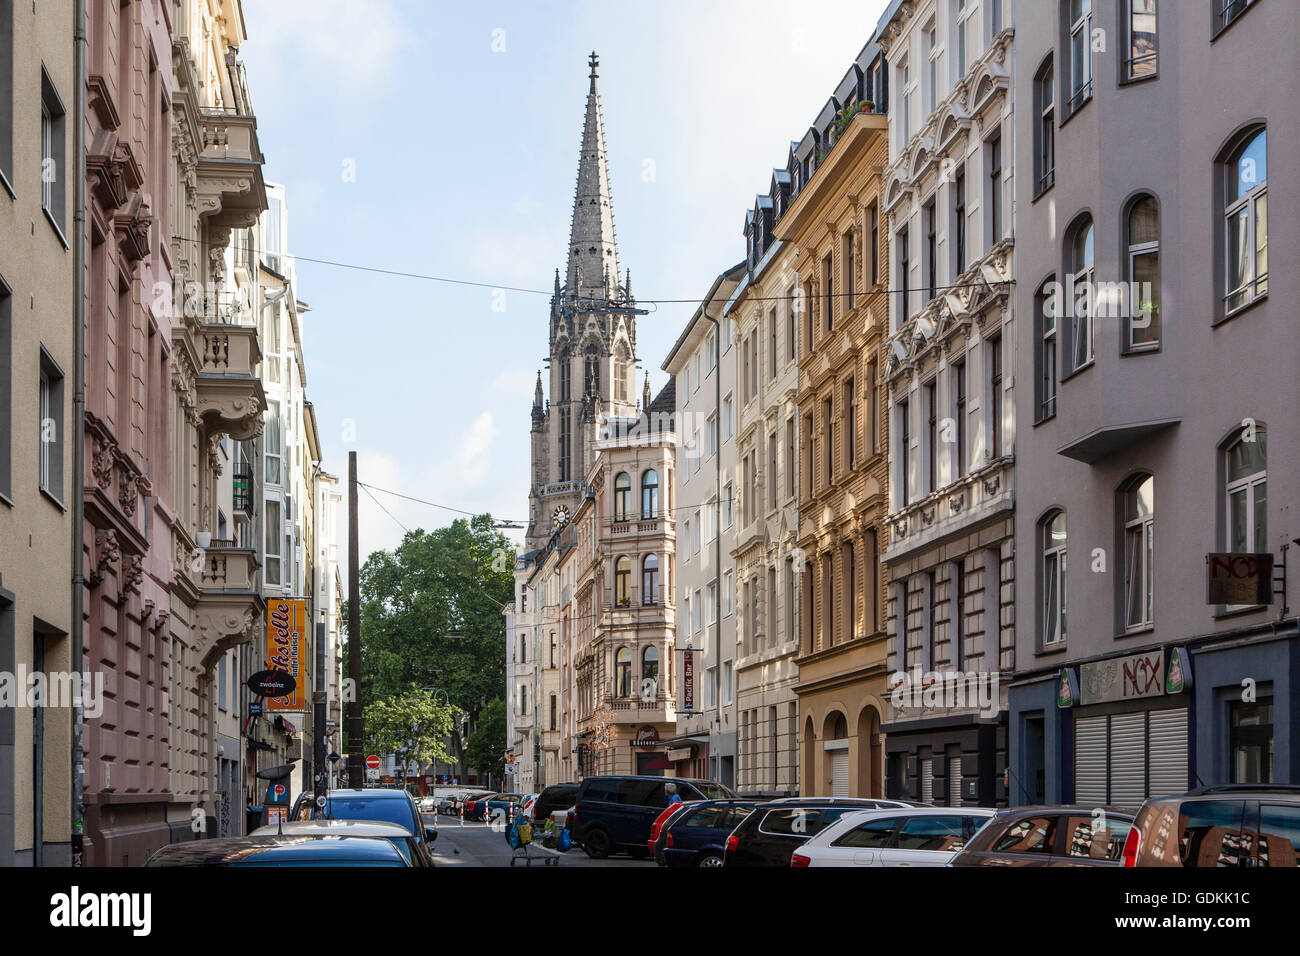 Europa, Colonia, edificios residenciales en la calle Hochstaden, Herz Jesu iglesia en la plaza Zuelpicher Foto de stock